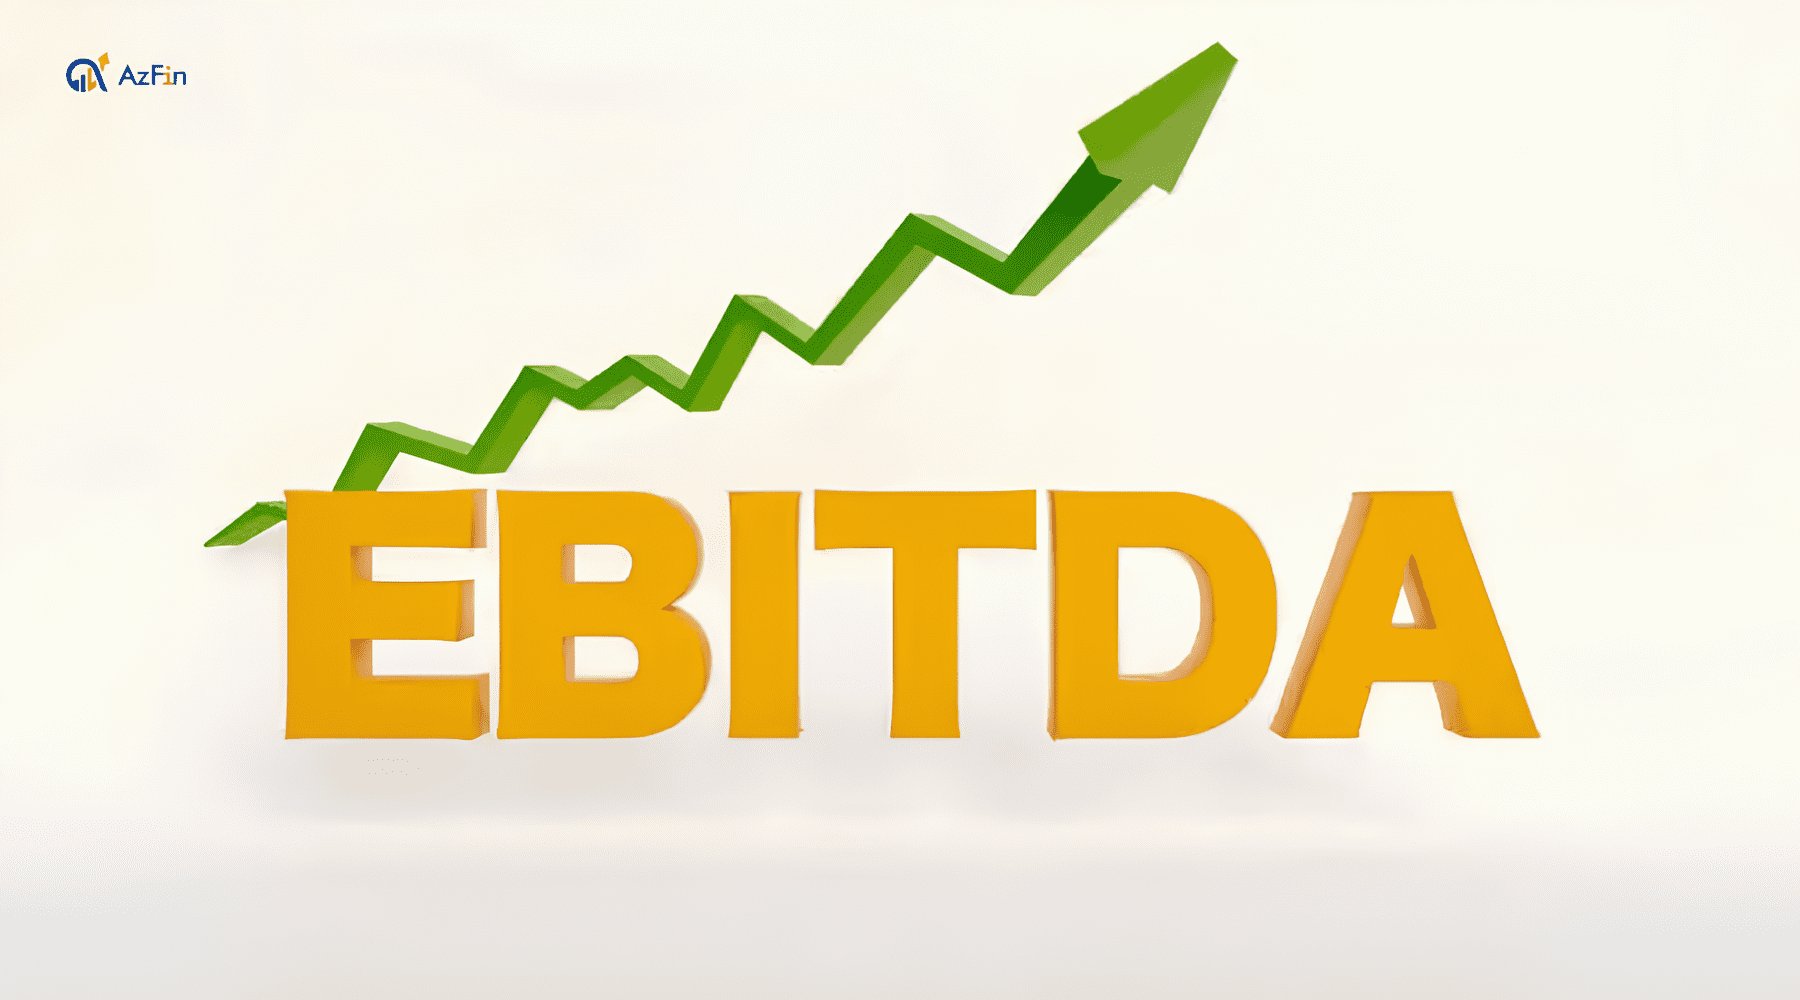 Ứng dụng của chỉ số EBITDA nhập góp vốn đầu tư bệnh khoán